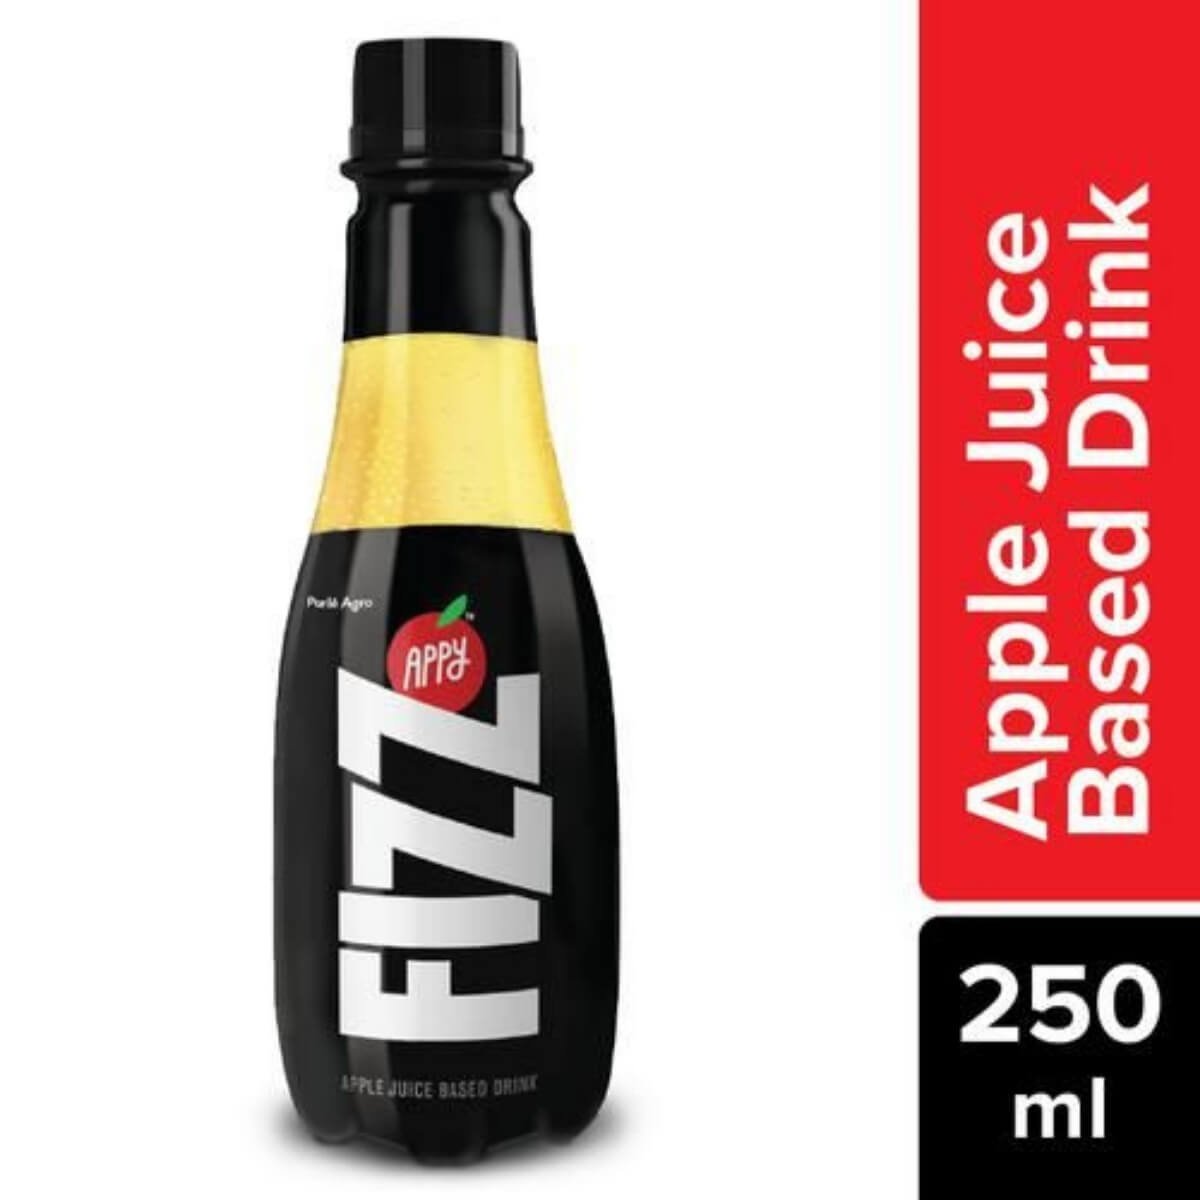 Appy fizz Apple juice-based drink, 250ml